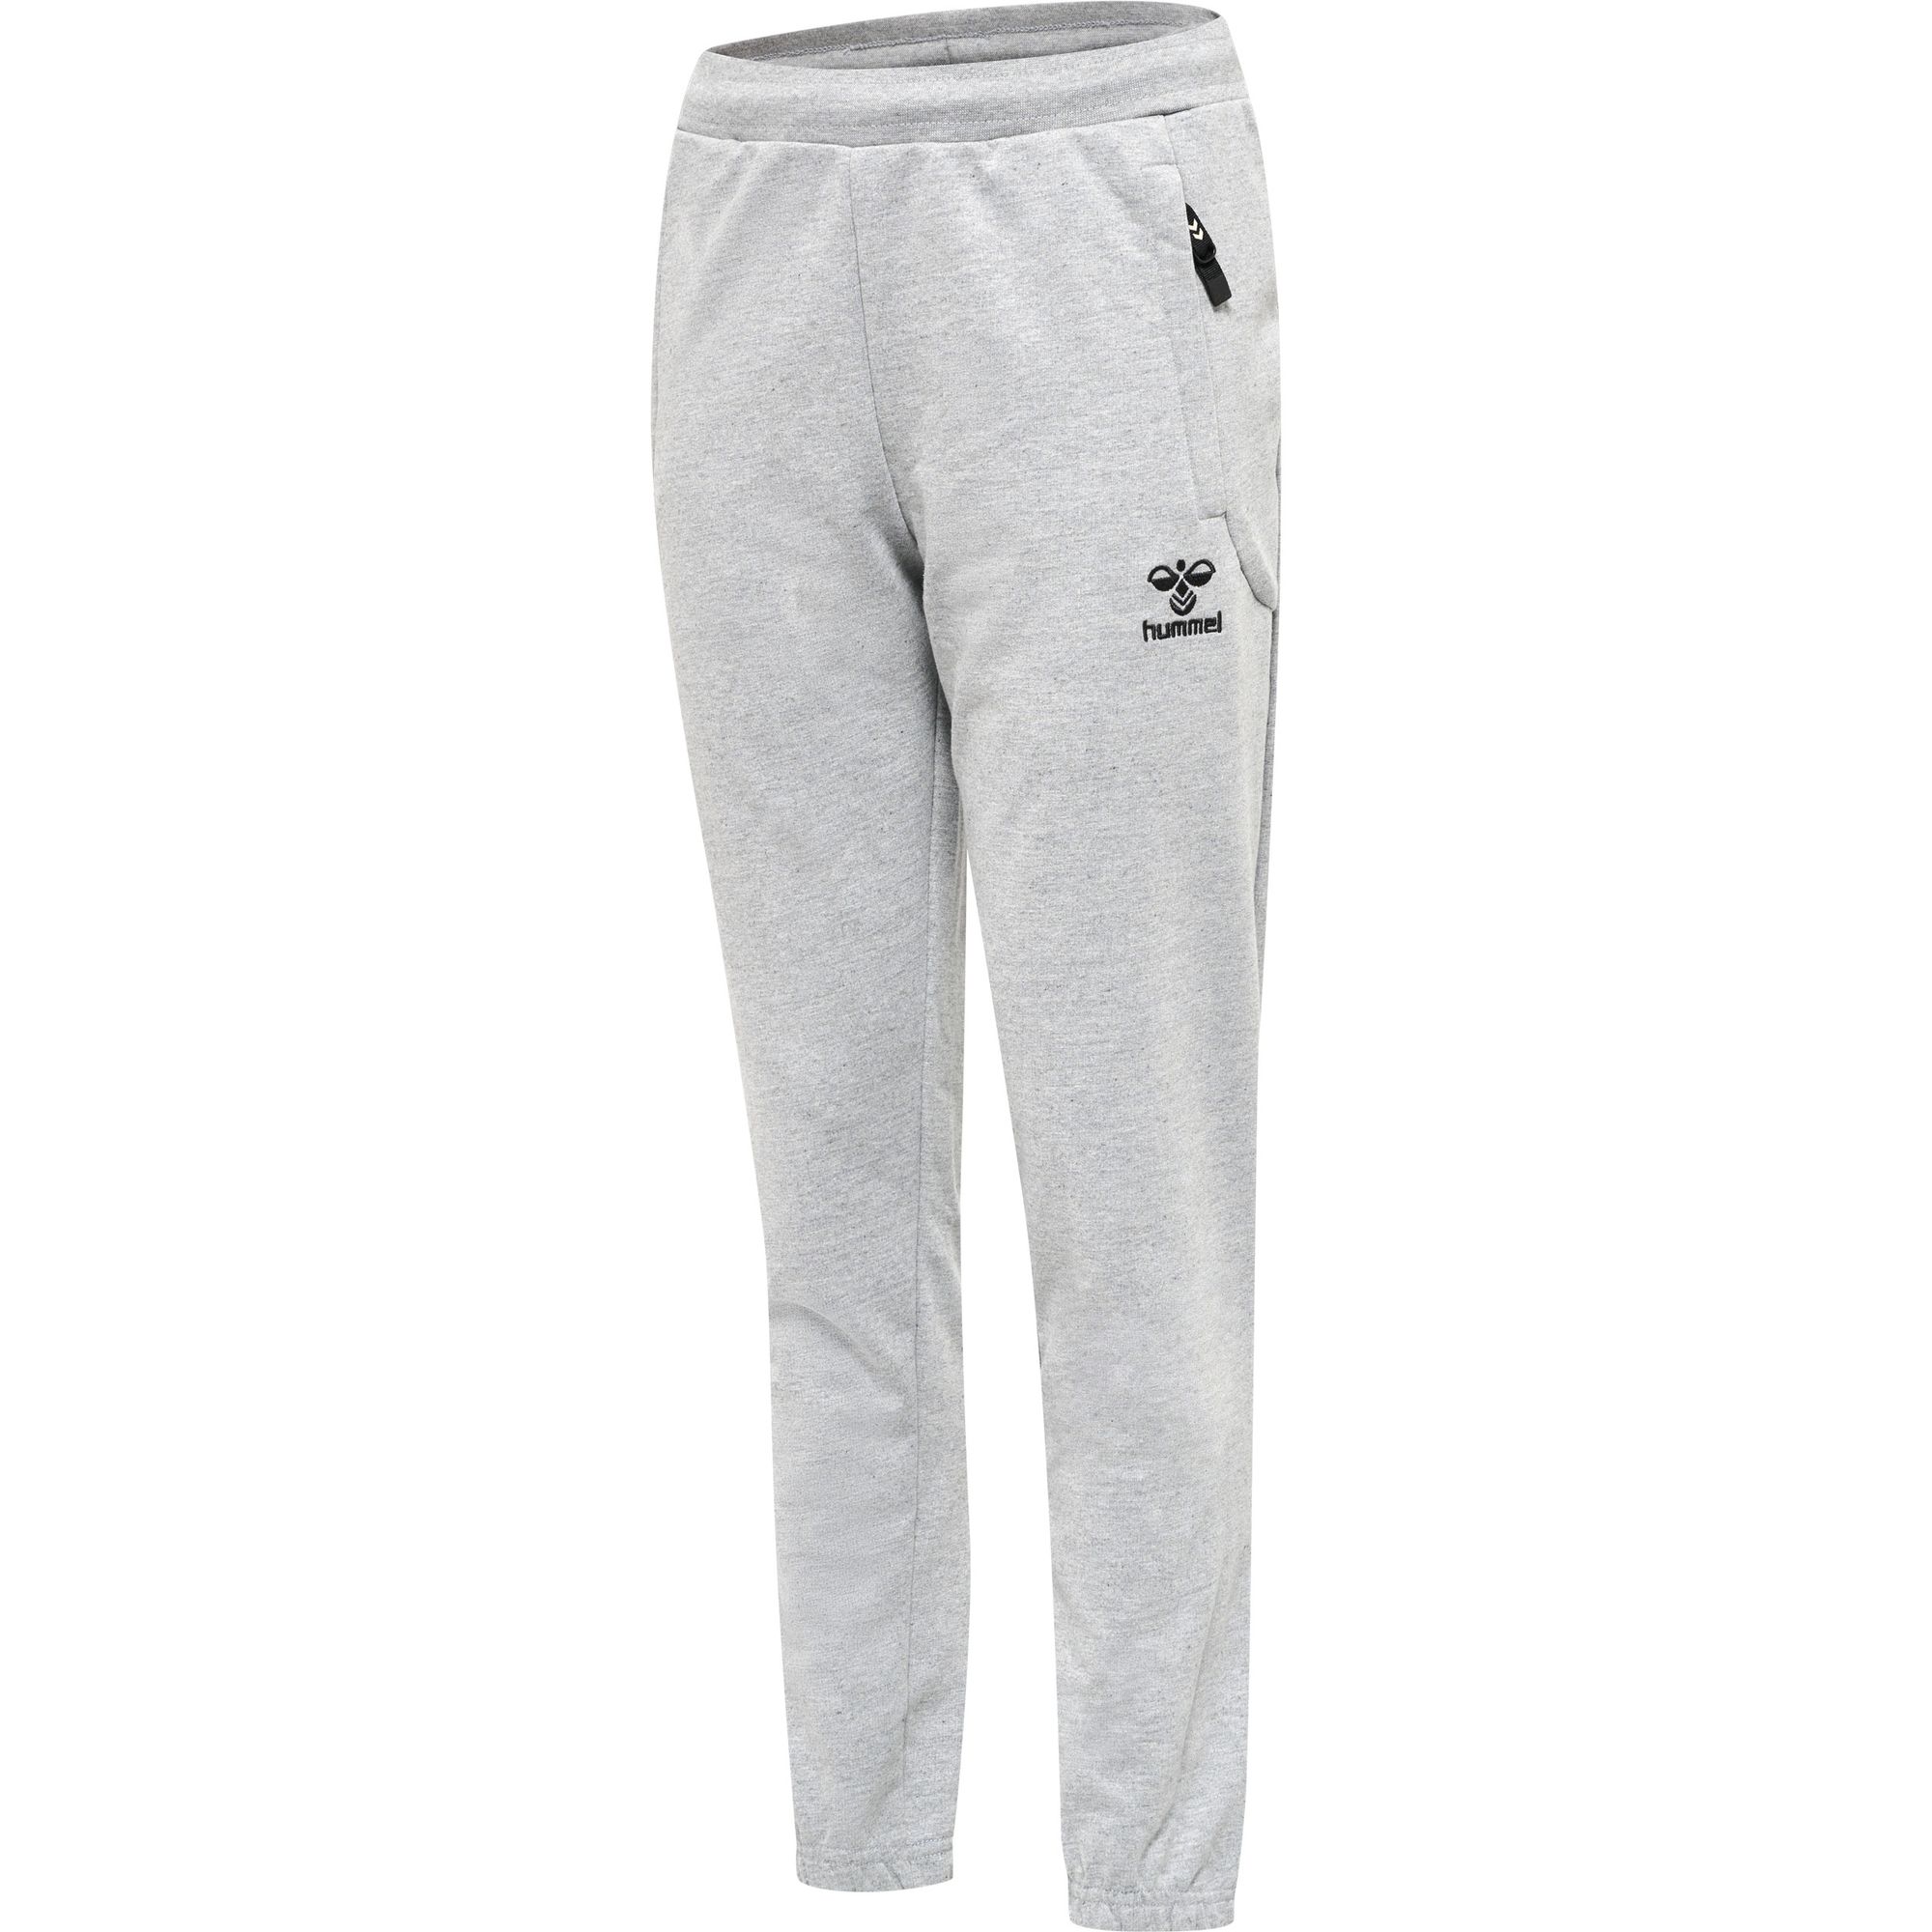 Hummel Hmlmove Grid Cotton Pants Kids - grey melange | Sport-Versand24.de -  ALL IN Sport Onlineshop für Kleidung, Schuhe & Ausrüstung